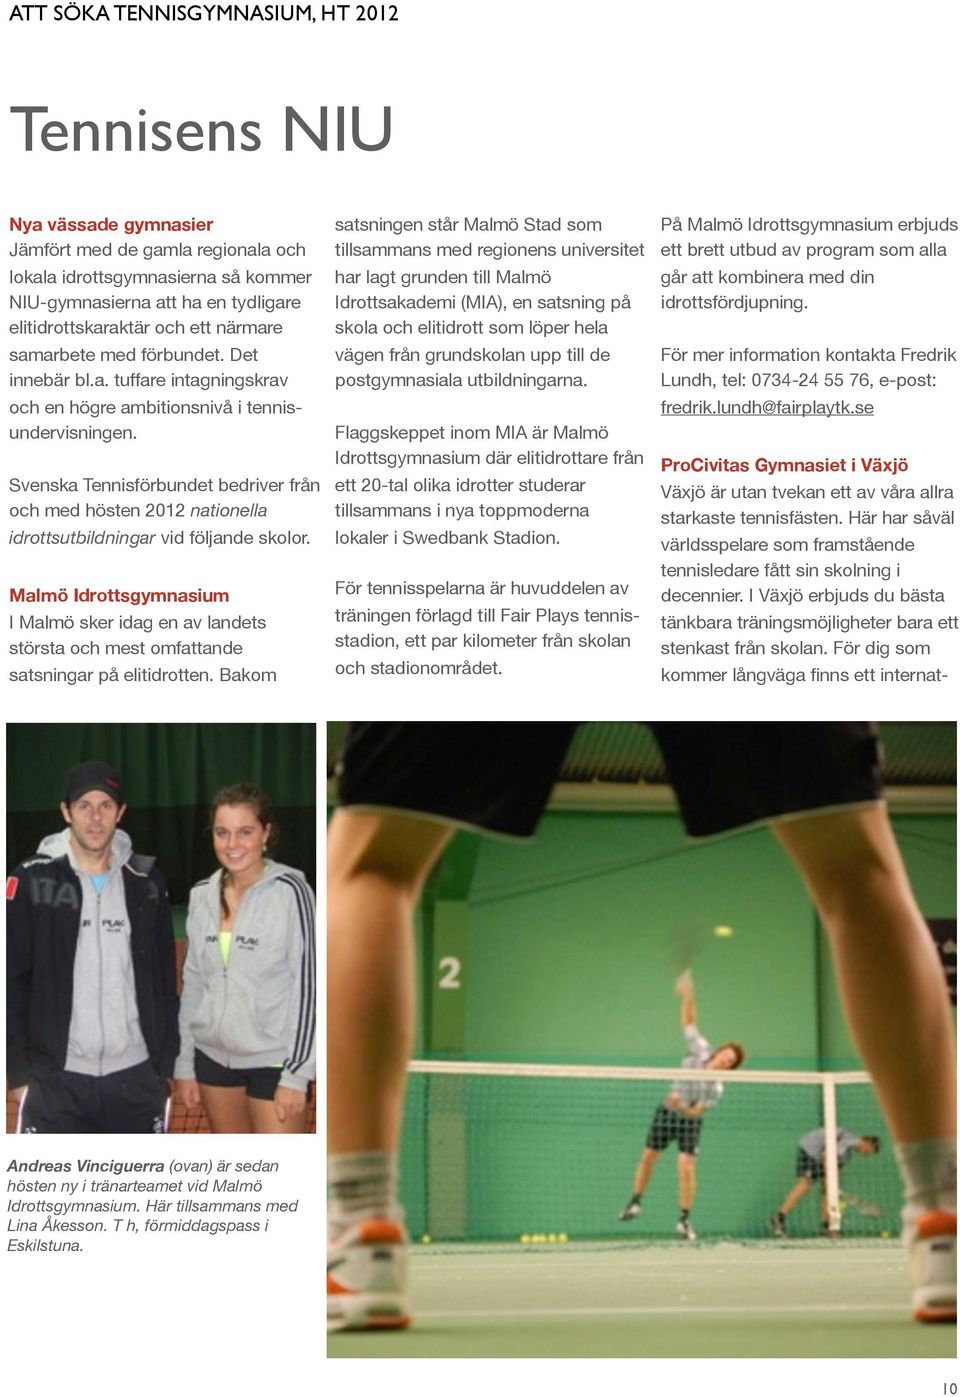 Svenska Tennisförbundet bedriver från och med hösten 2012 nationella idrottsutbildningar vid följande skolor.